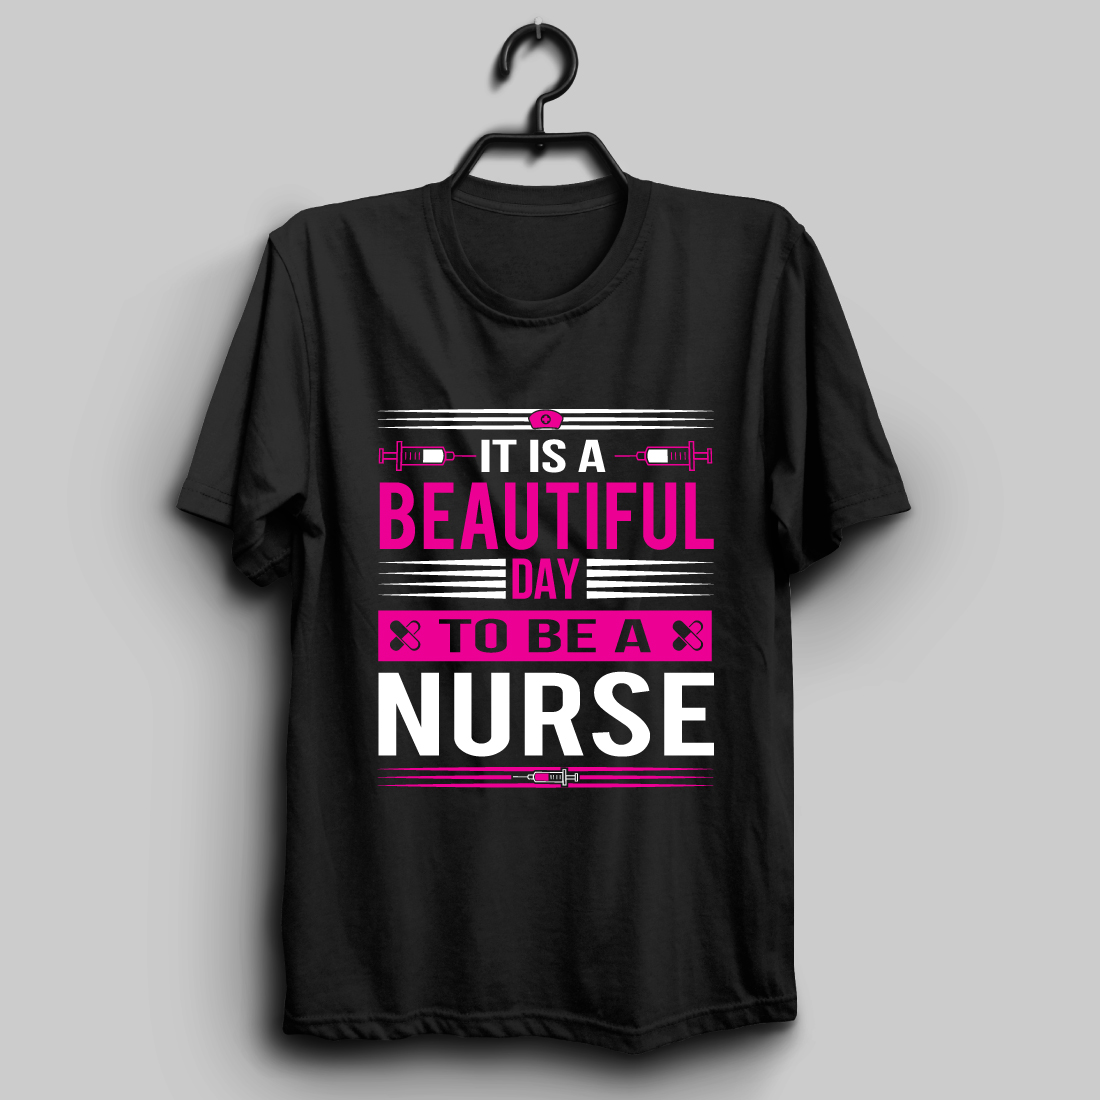 Nurse T-shirt Design Bundle preview image.